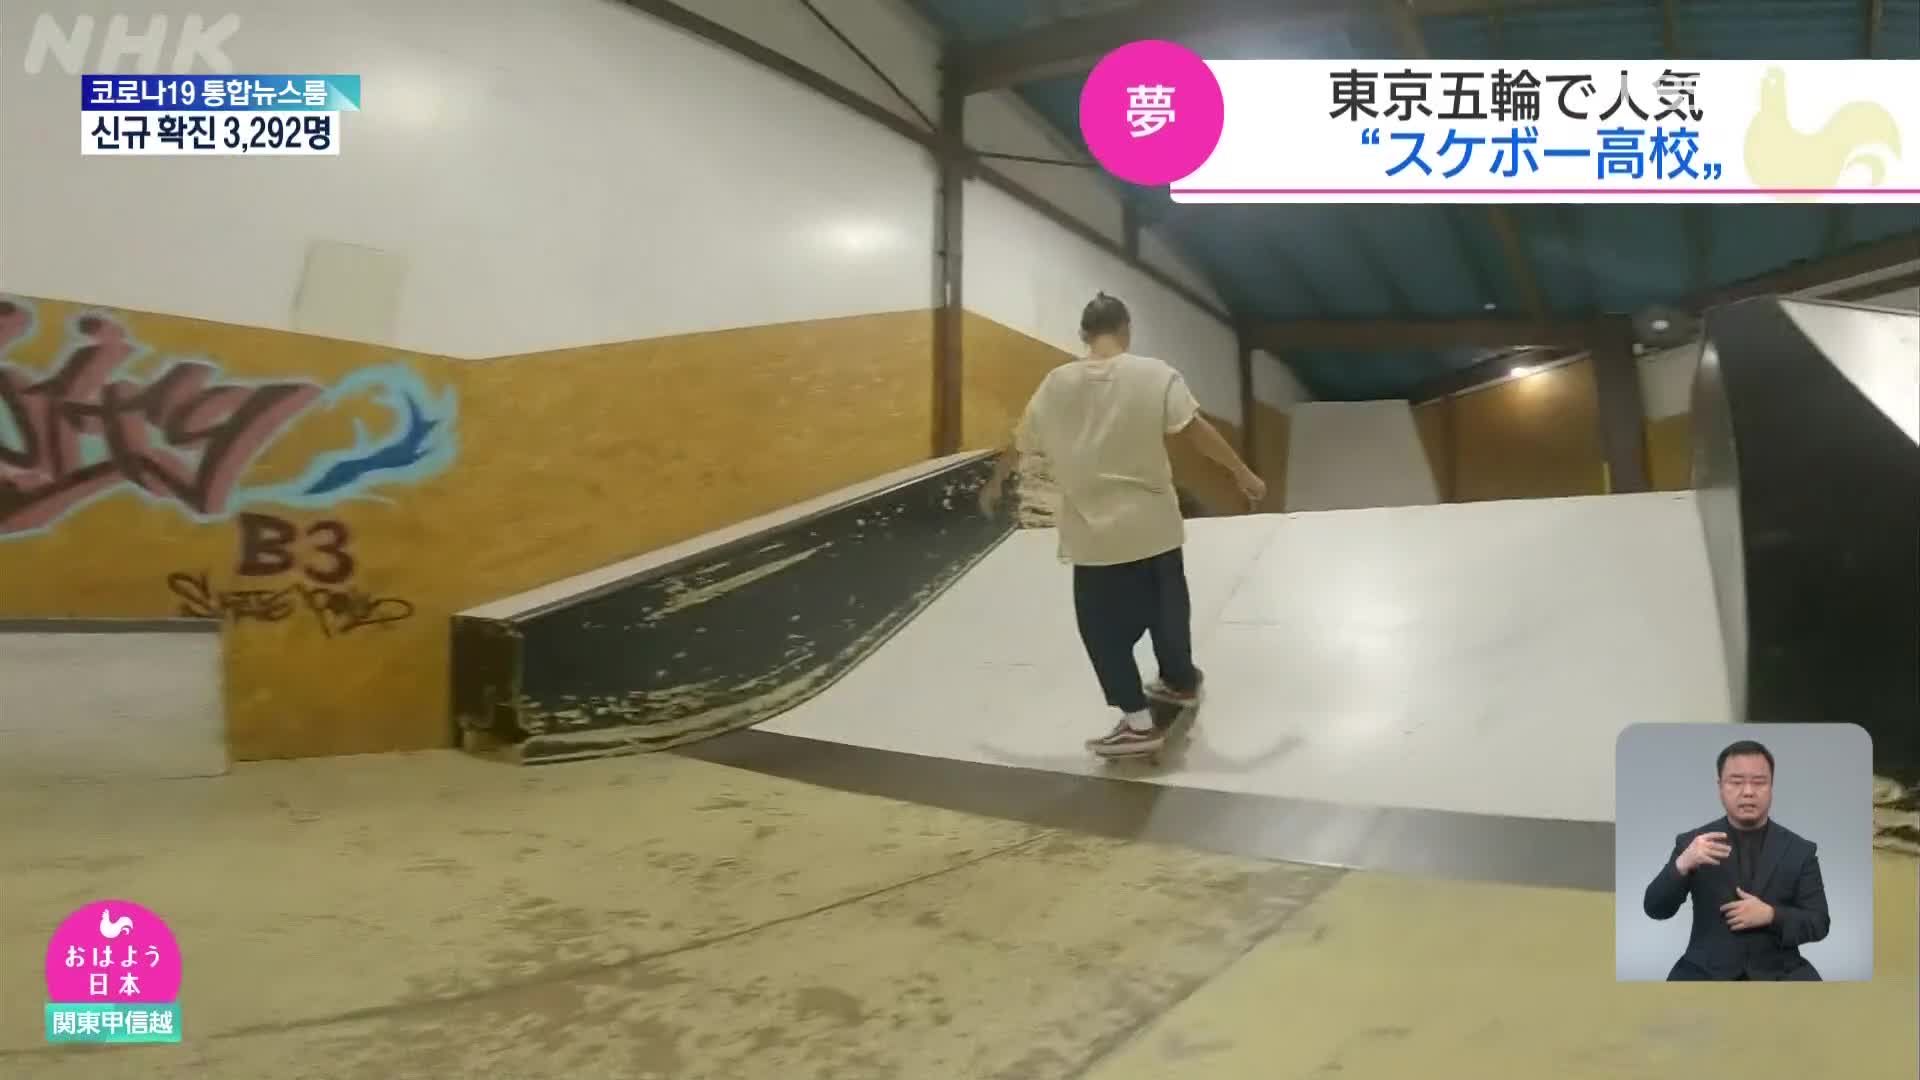 일본 유일의 ‘스케이트보드’ 고등학교